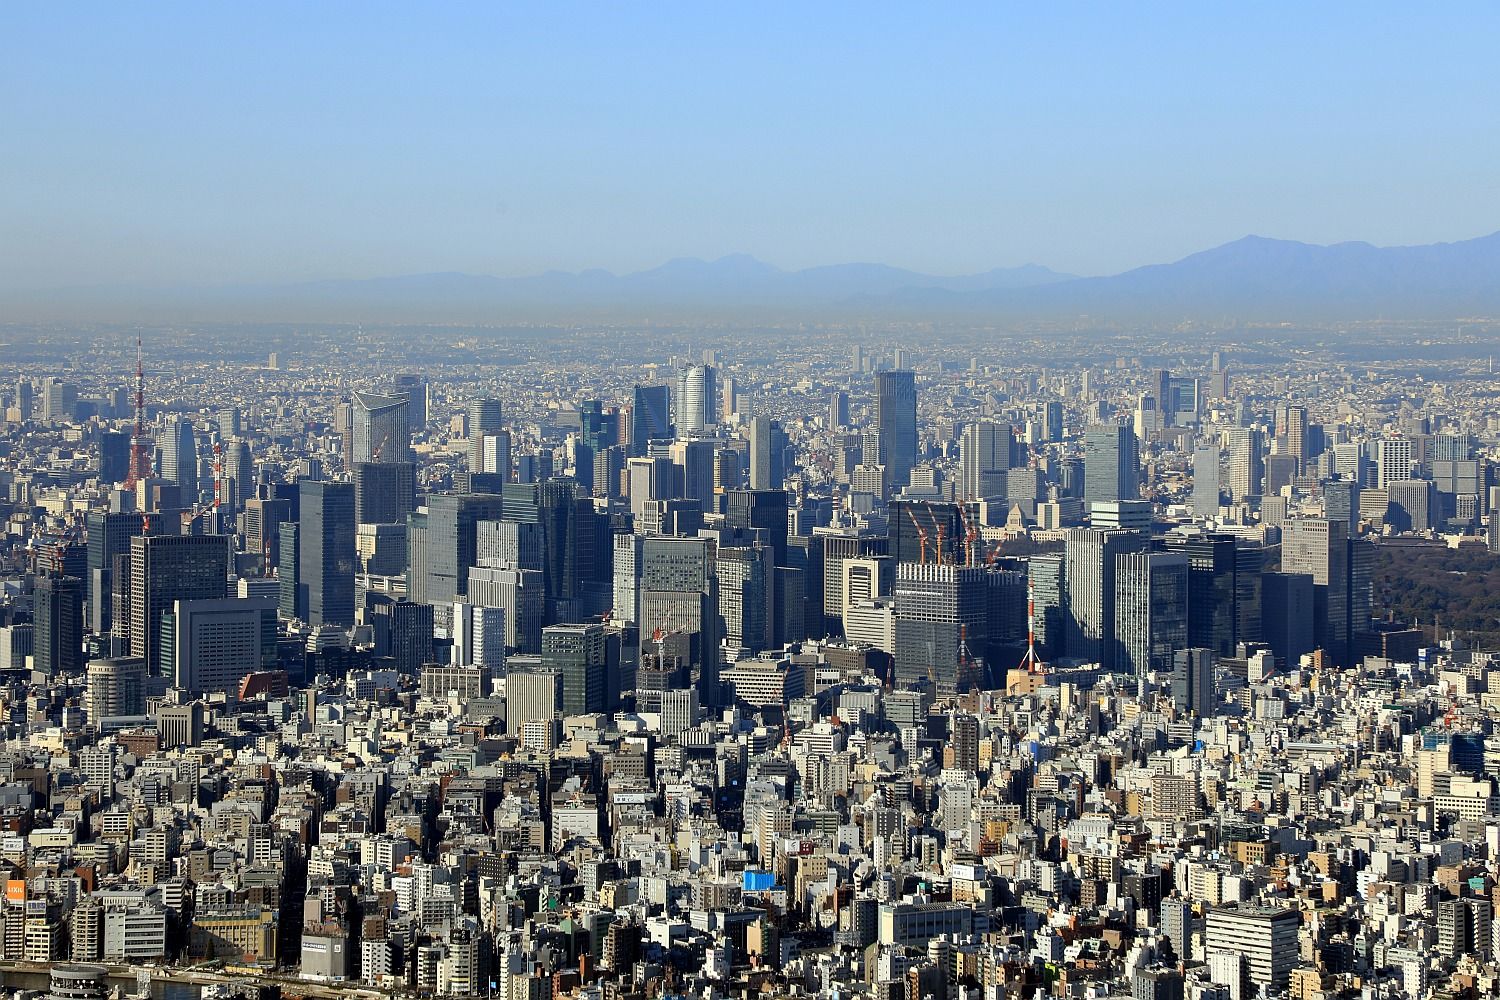 天望回廊から見た東京都心の超高層ビル群 17年3月9日撮影 東京スカイツリー定点観測所